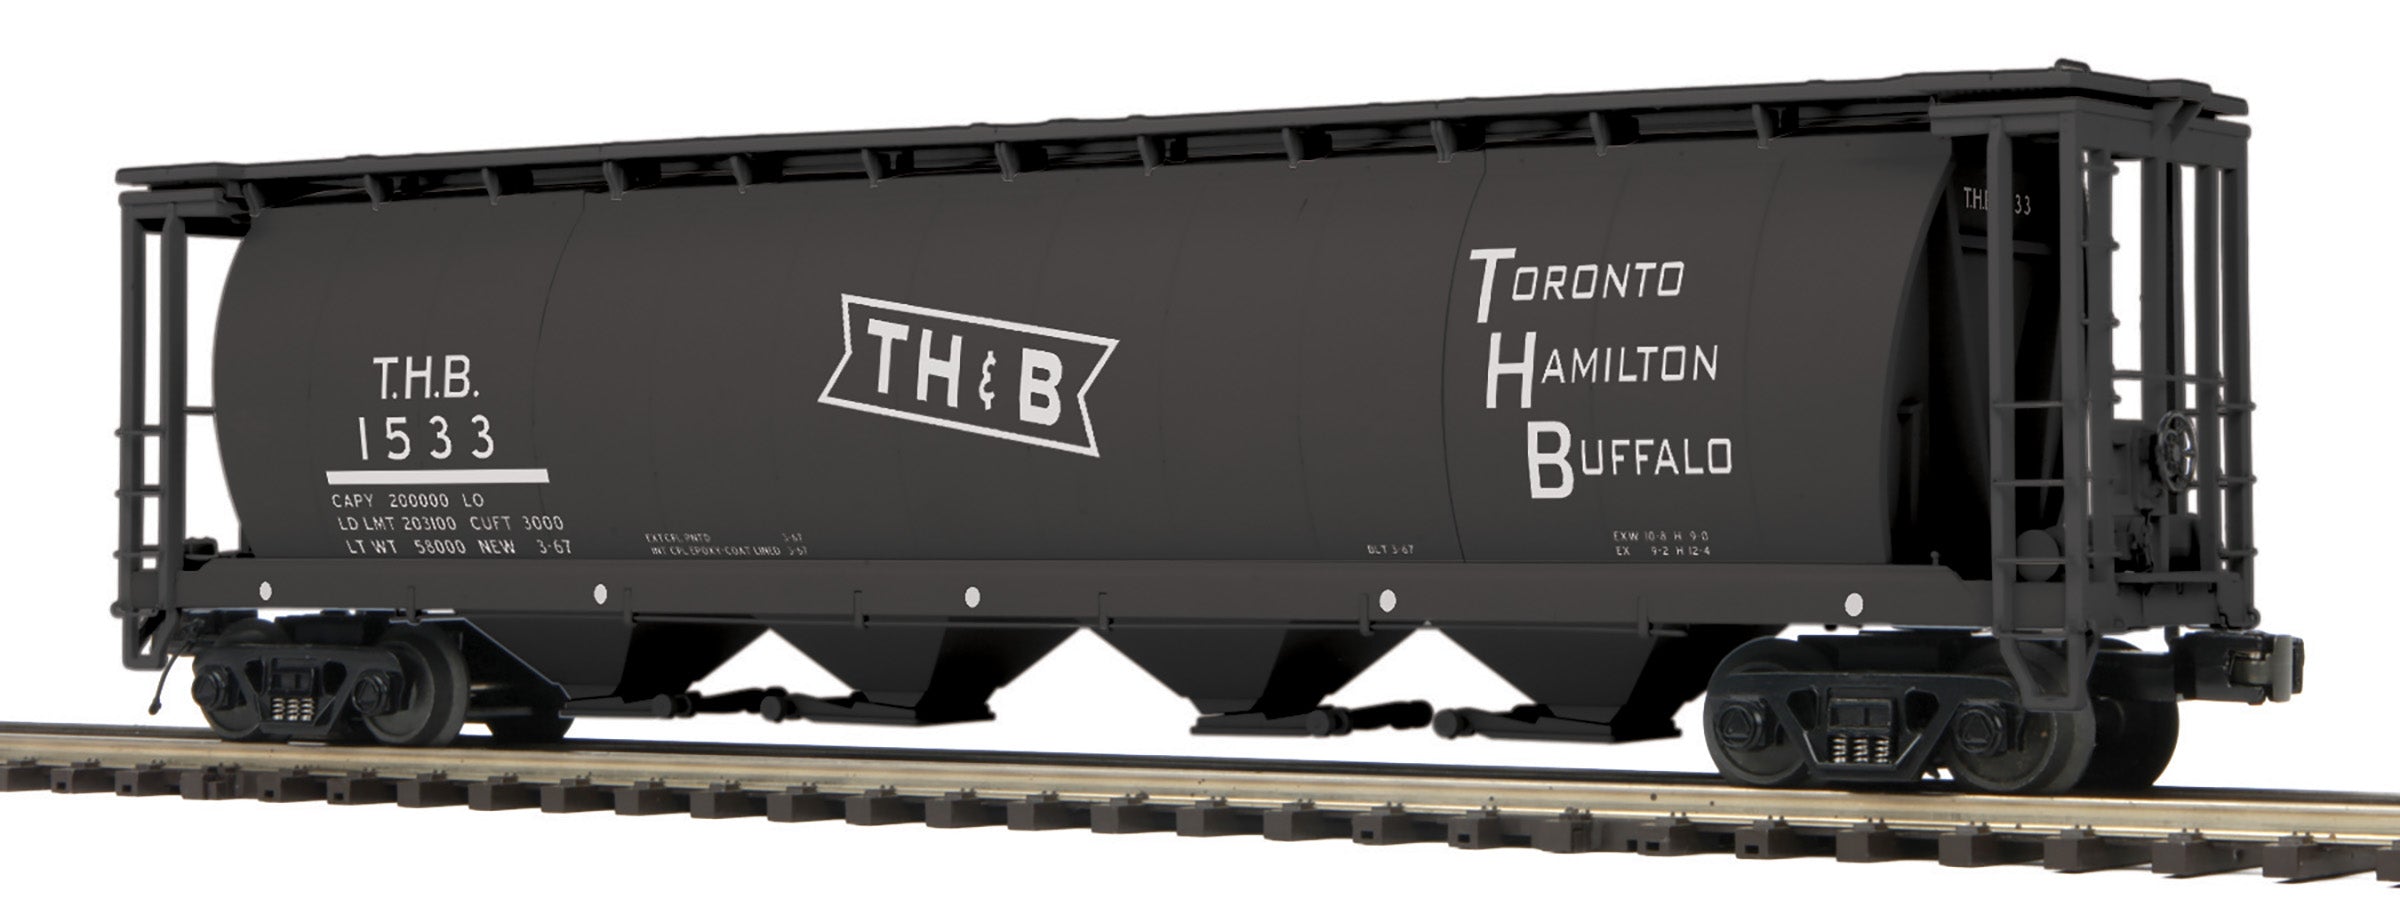 MTH 20-99067 - 100 Ton Hopper Car "Toronto, Hamilton & Buffalo" 1533 - Custom Run for E-Z Catch